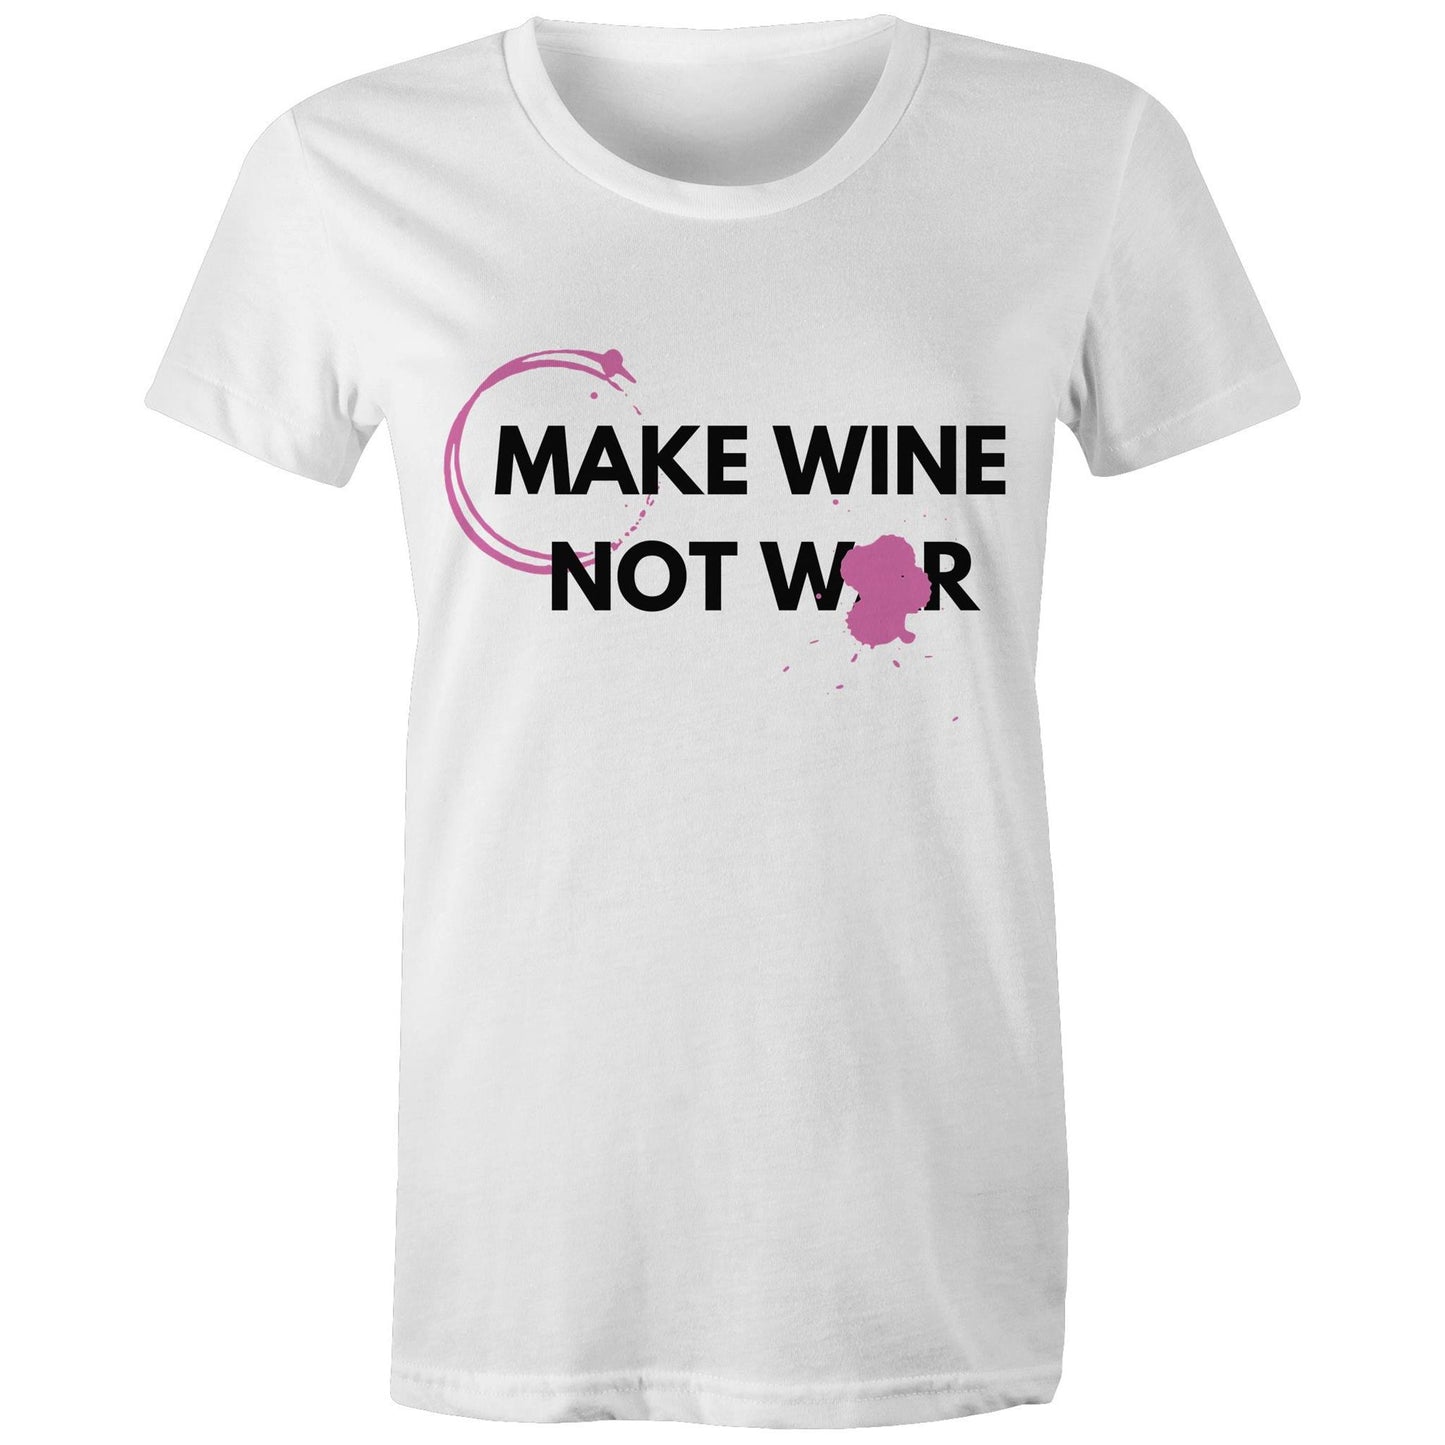 Wine Not War - Women's Crew Neck